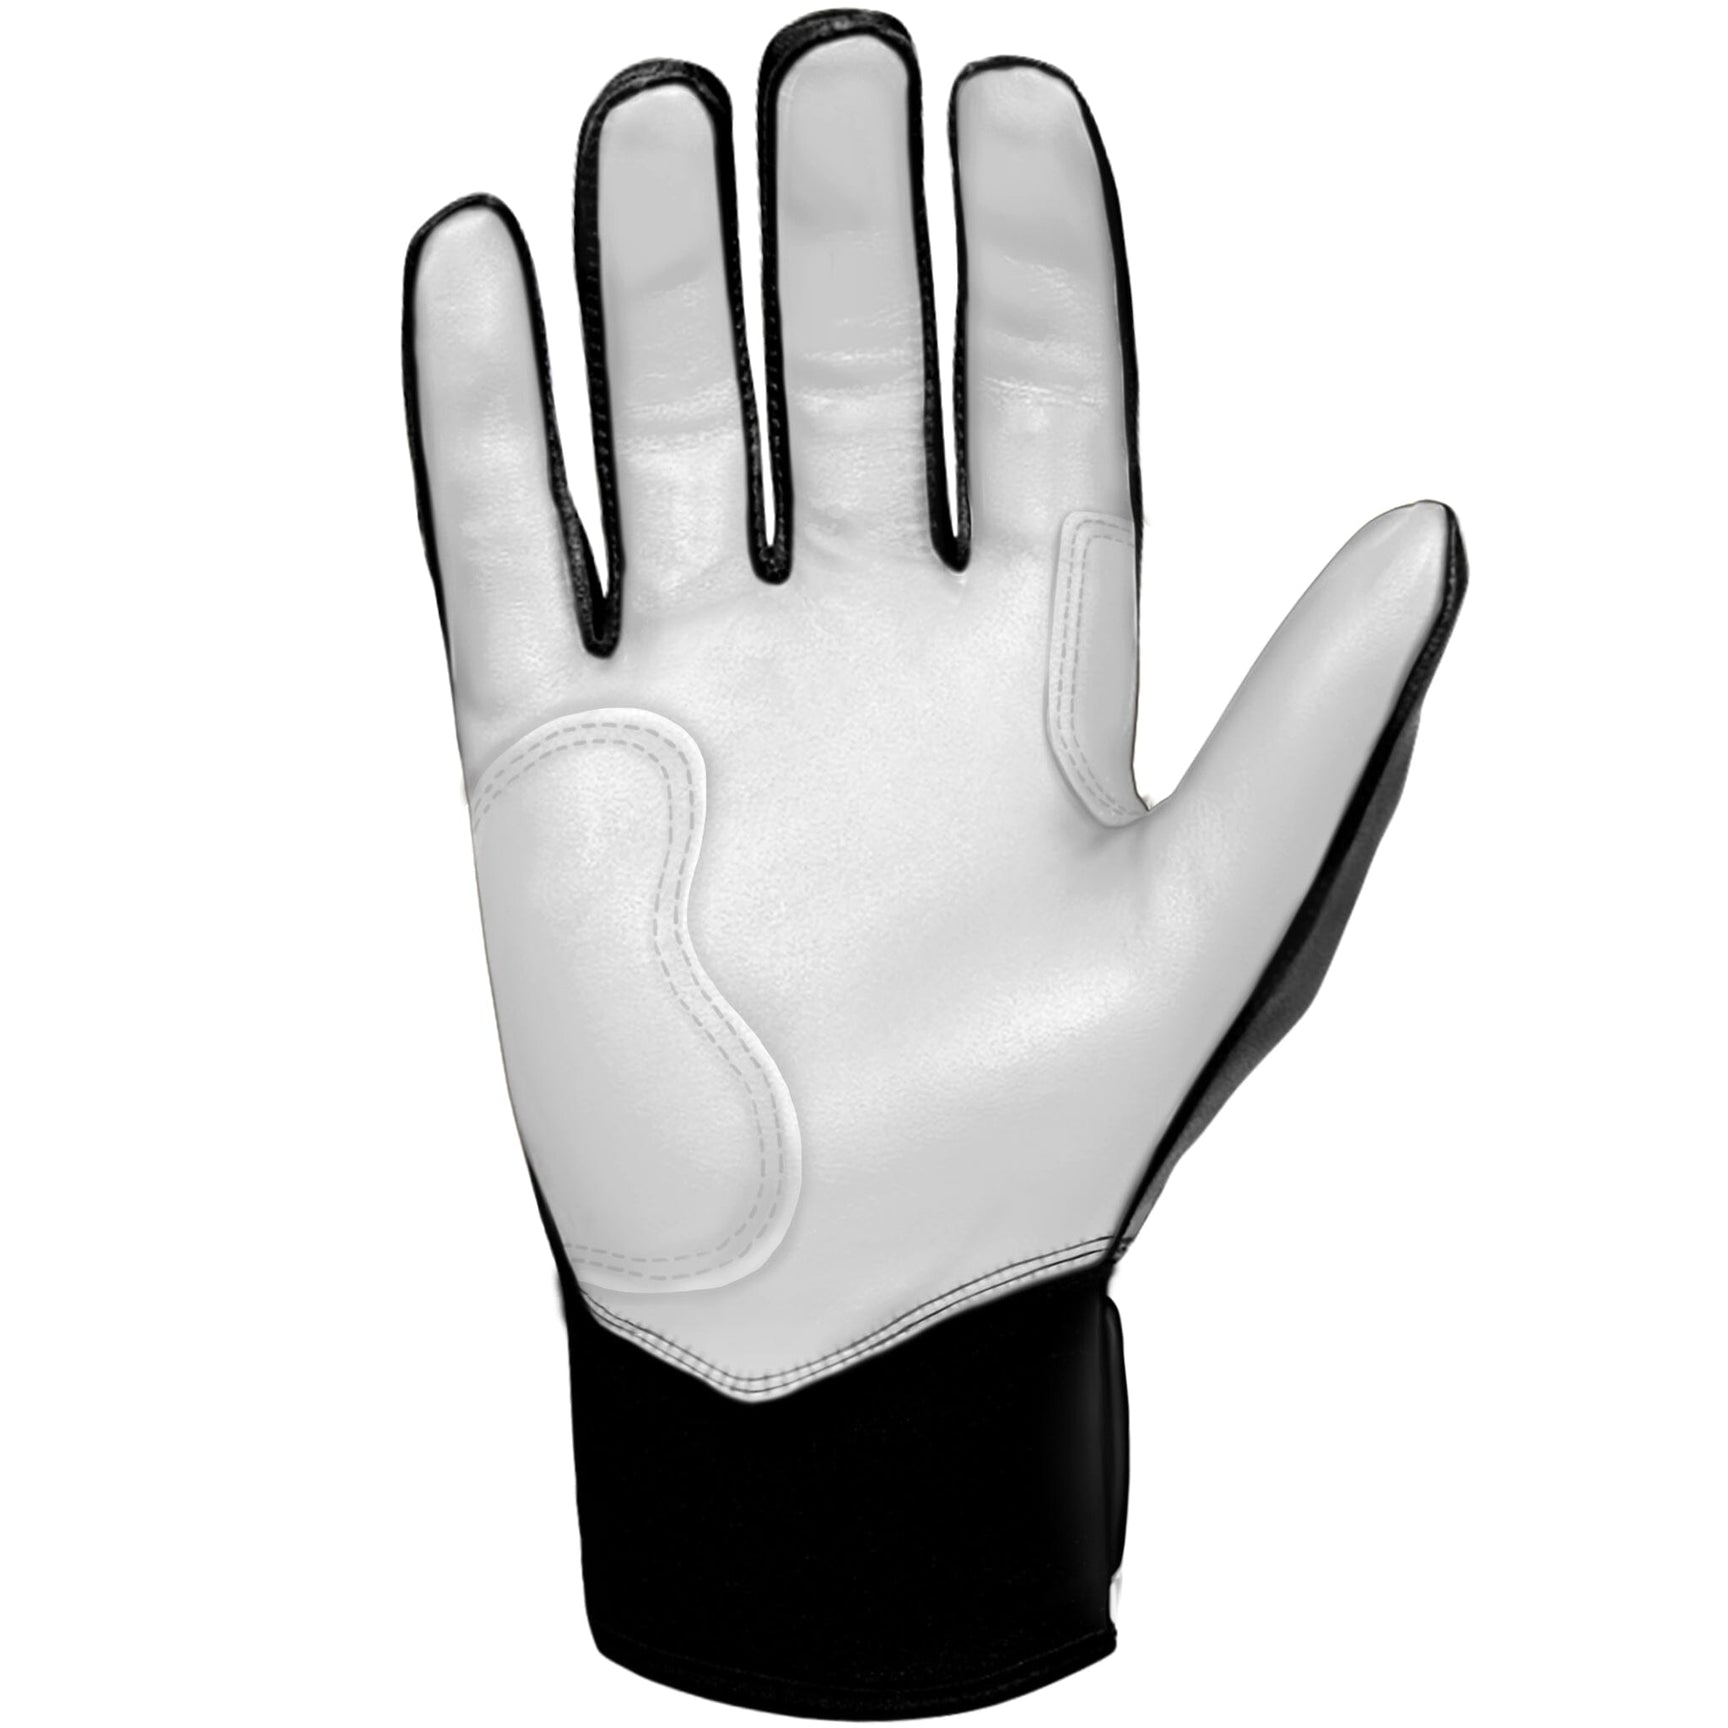 Pink Batting Gloves  Harrison Bader Batting Gloves – BRUCE BOLT